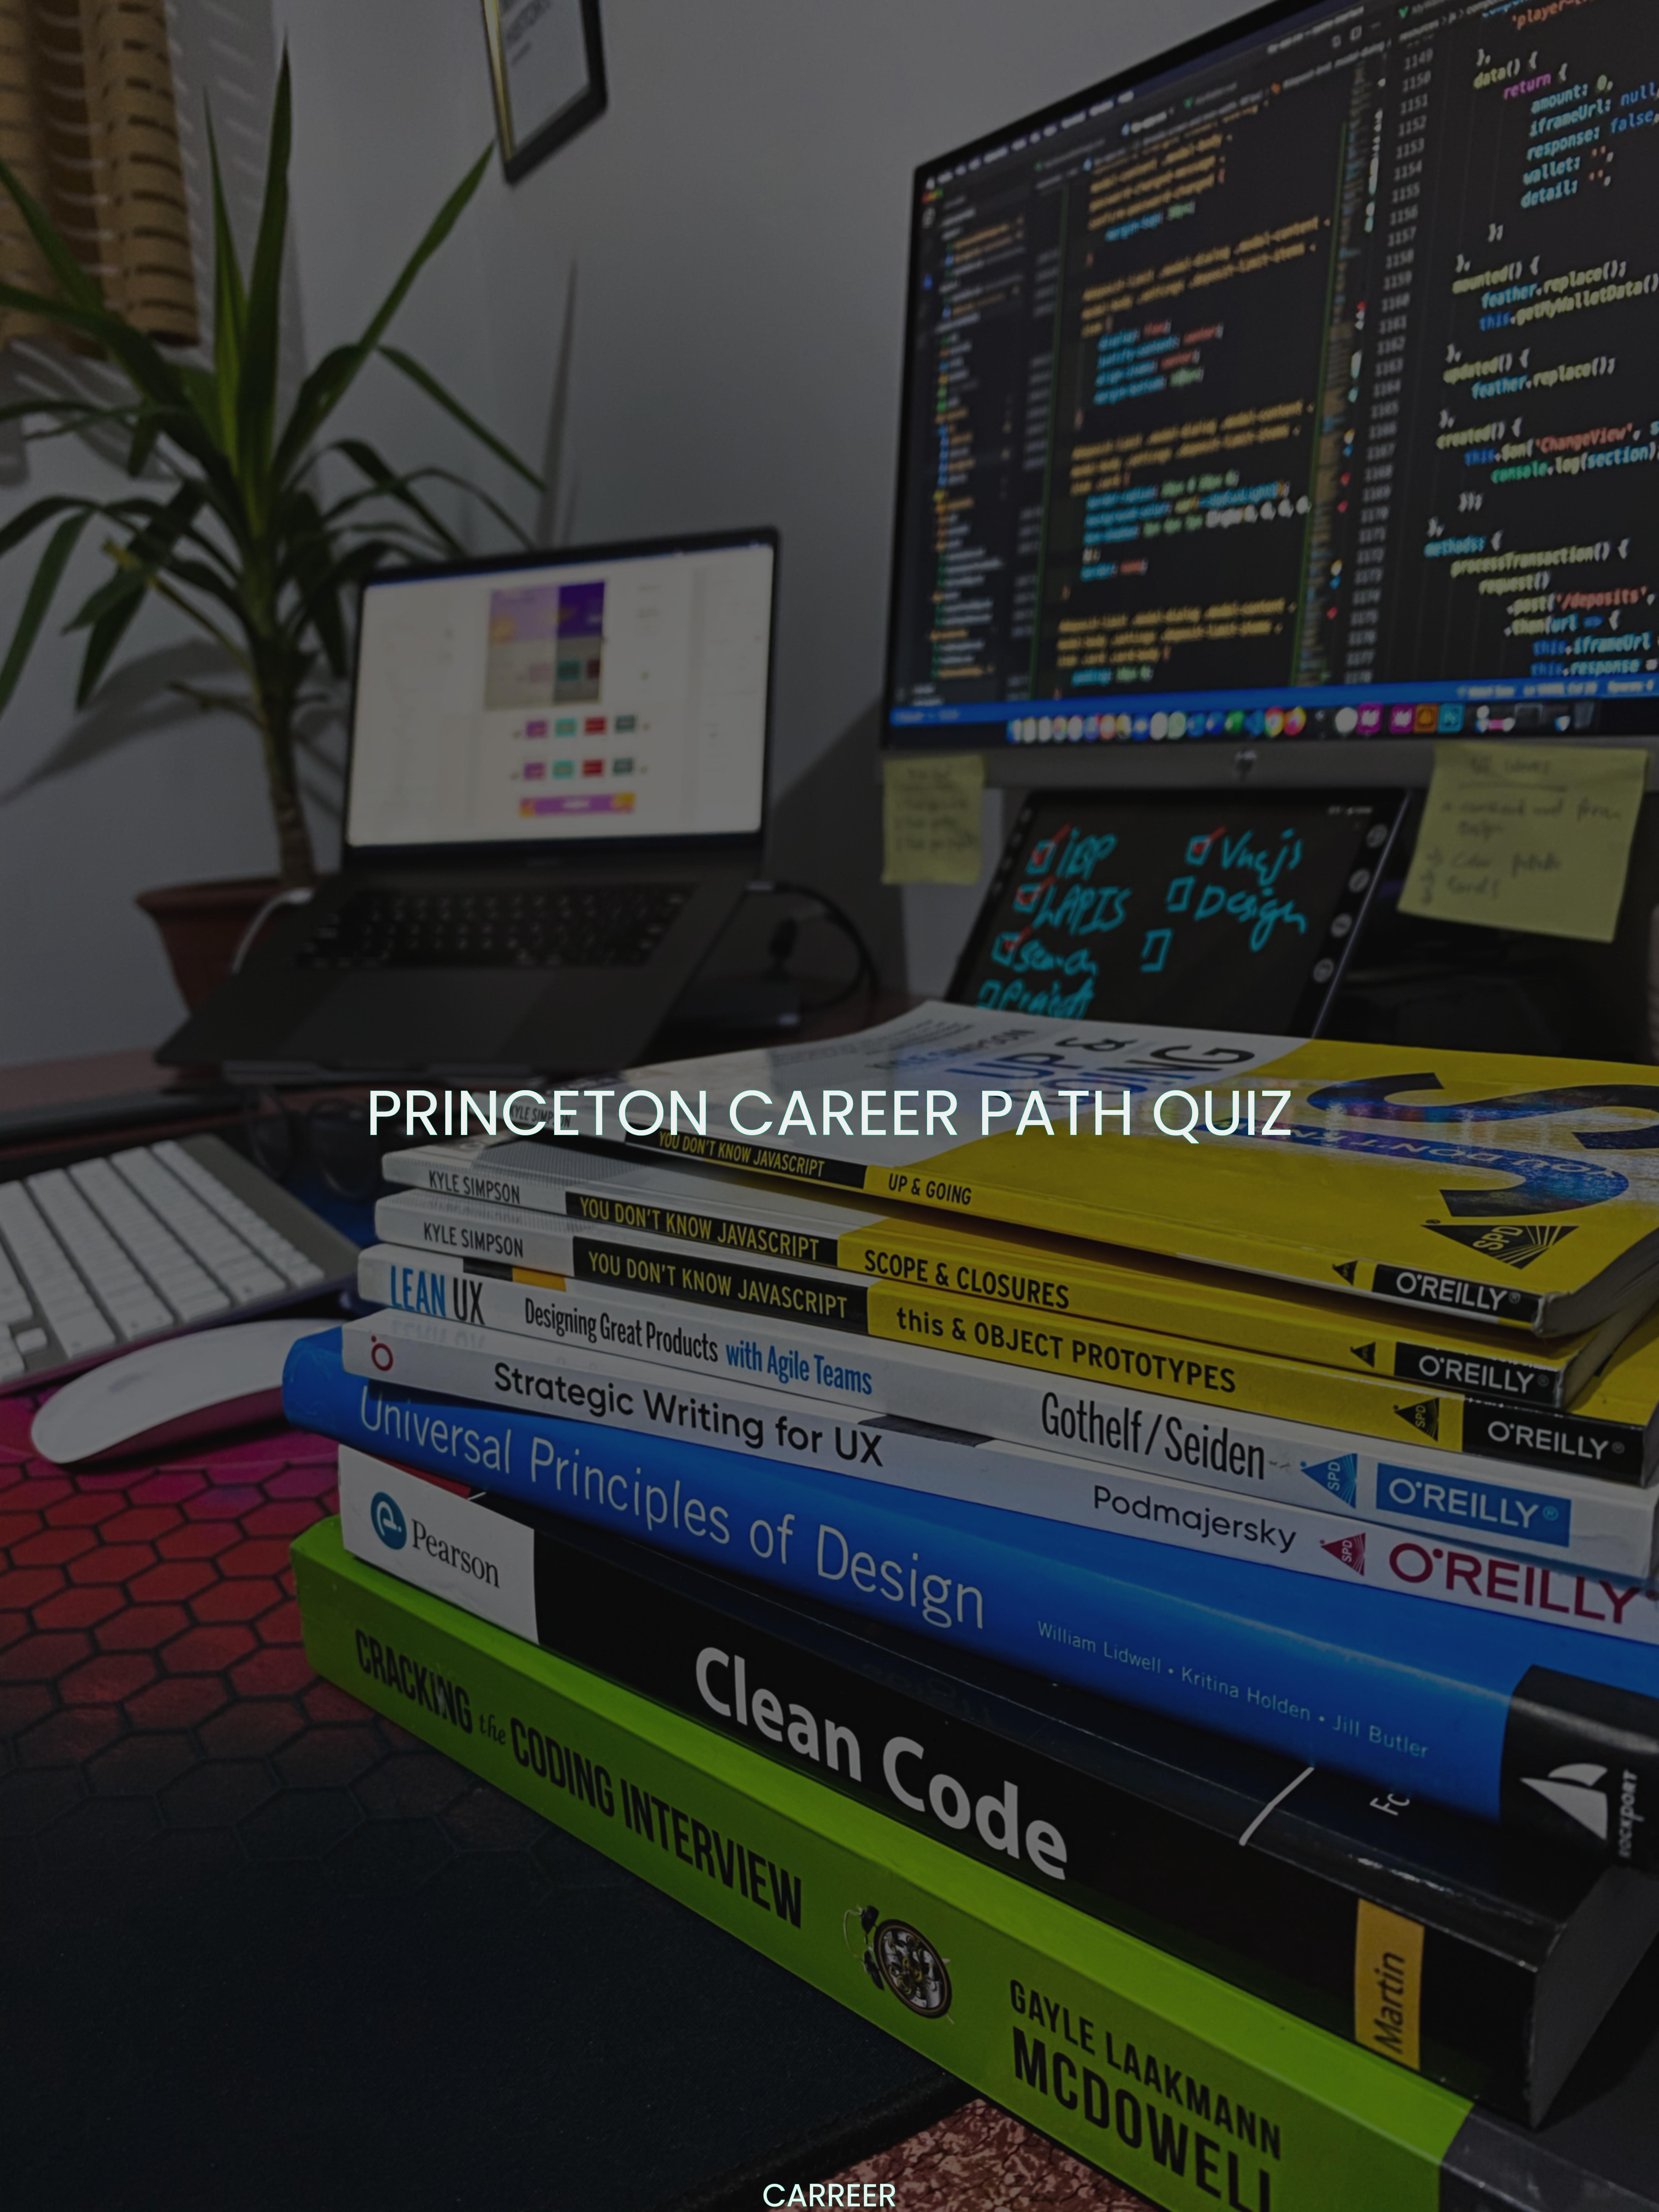 Princeton career path quiz